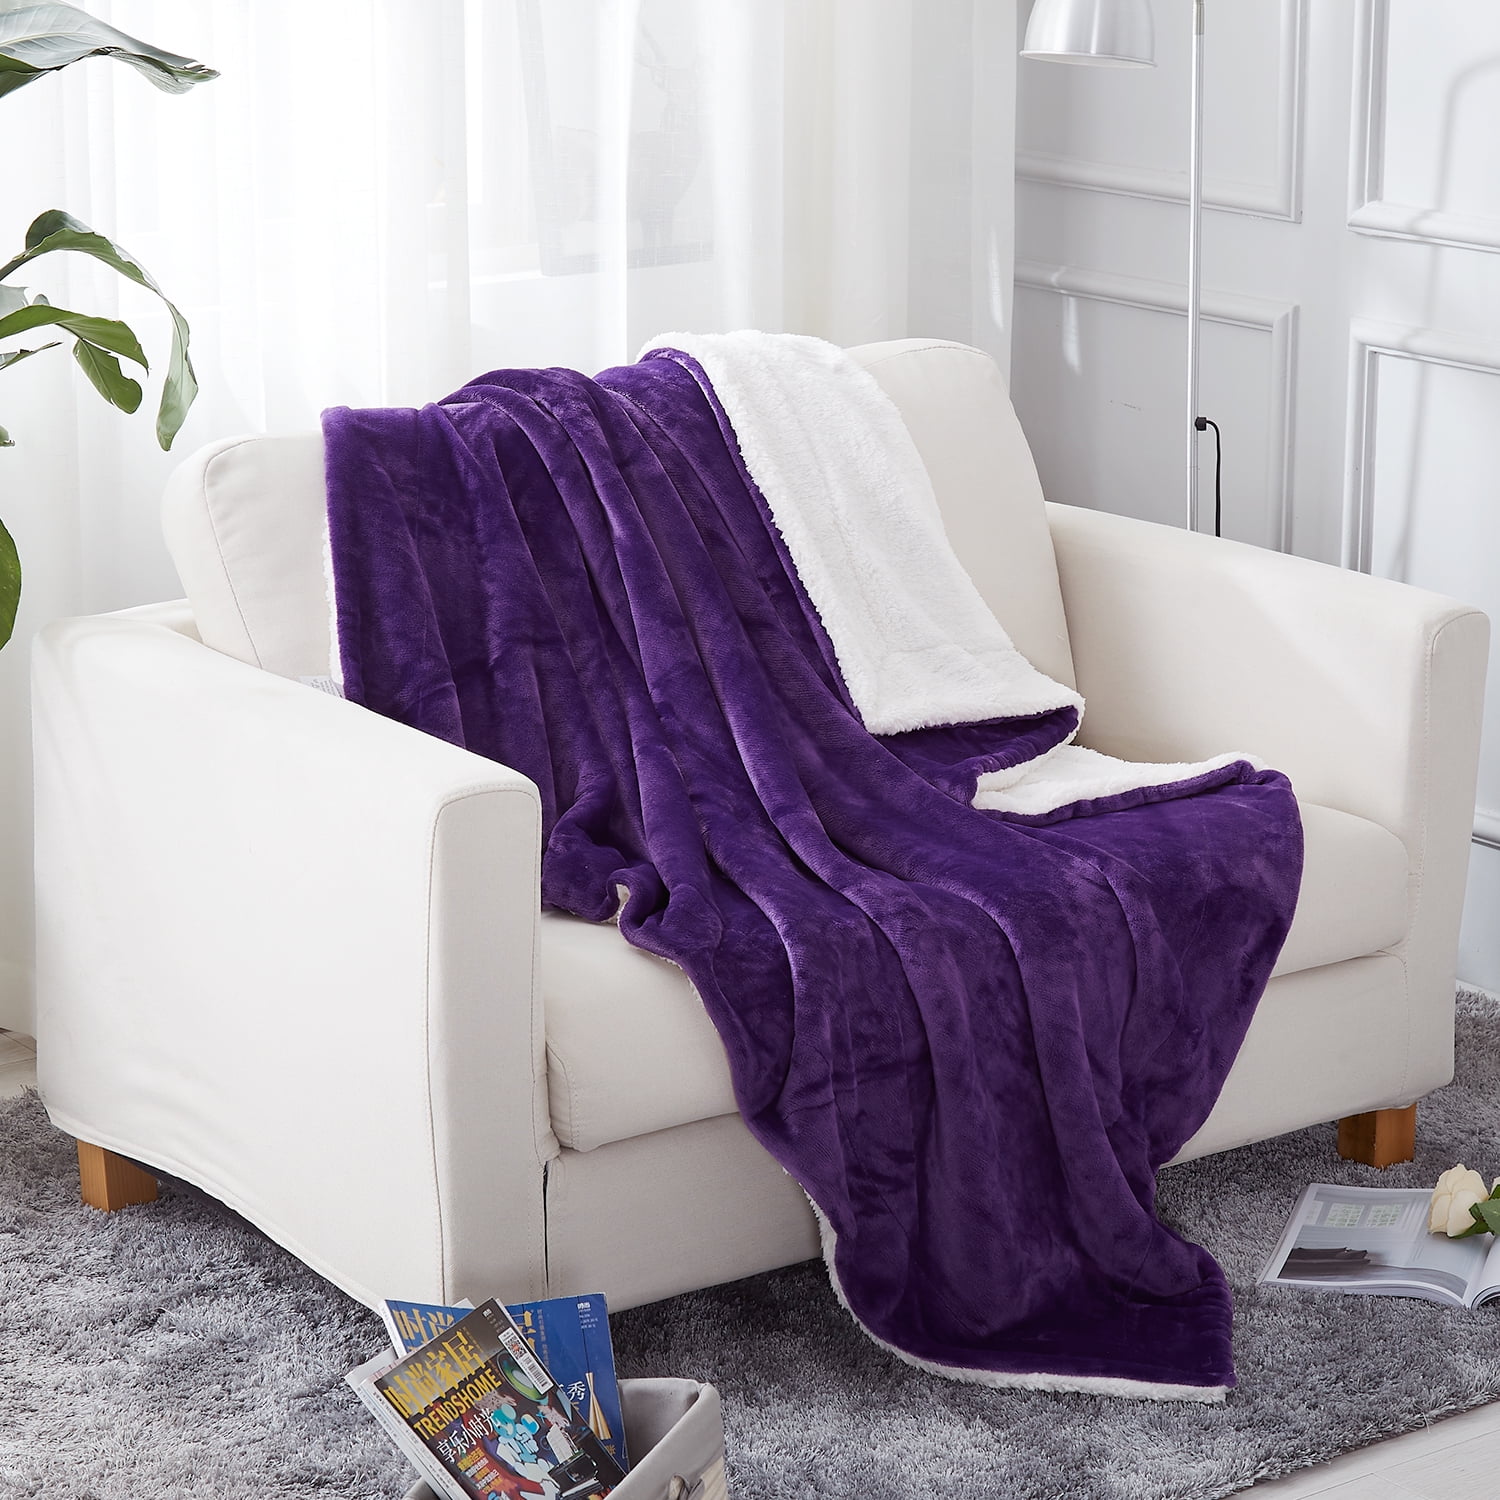 JML Sherpa Fleece Blanket(Twin,Purple) Soft Warm, Reversible Plush Fleece  Couch Bed Blanket